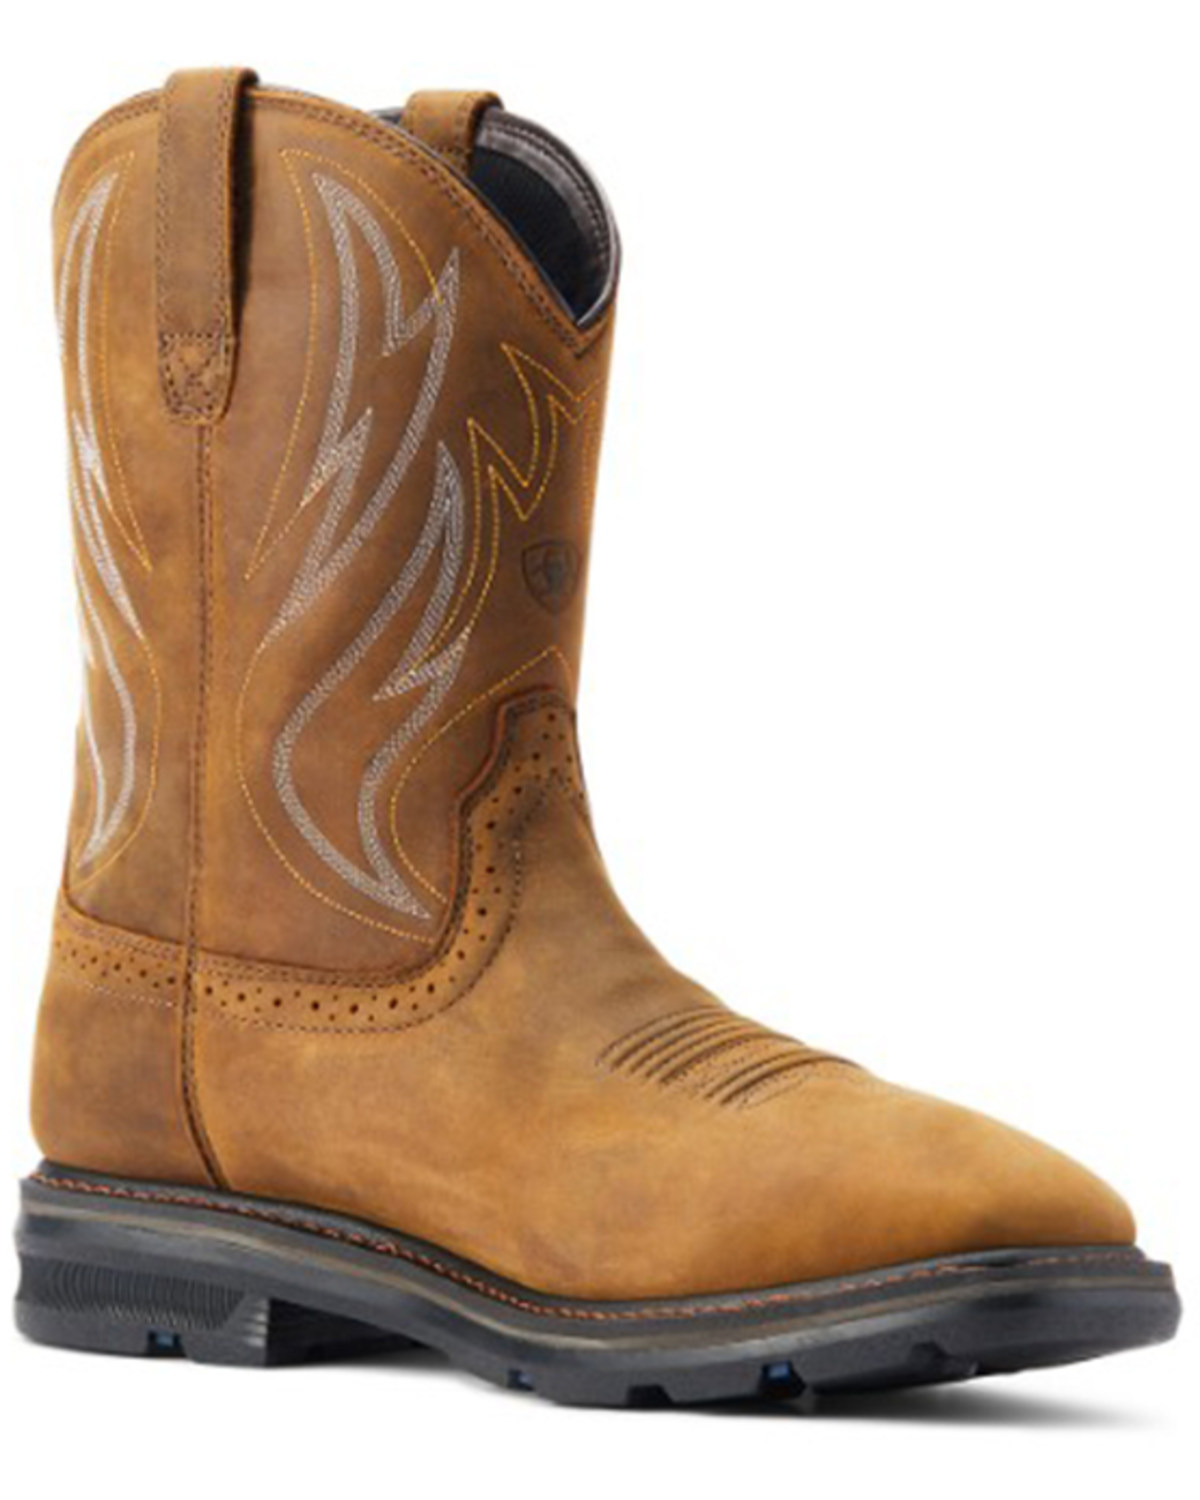 Ariat Men's Sierra Shock Shield Waterproof Western Work Boots - Soft Toe